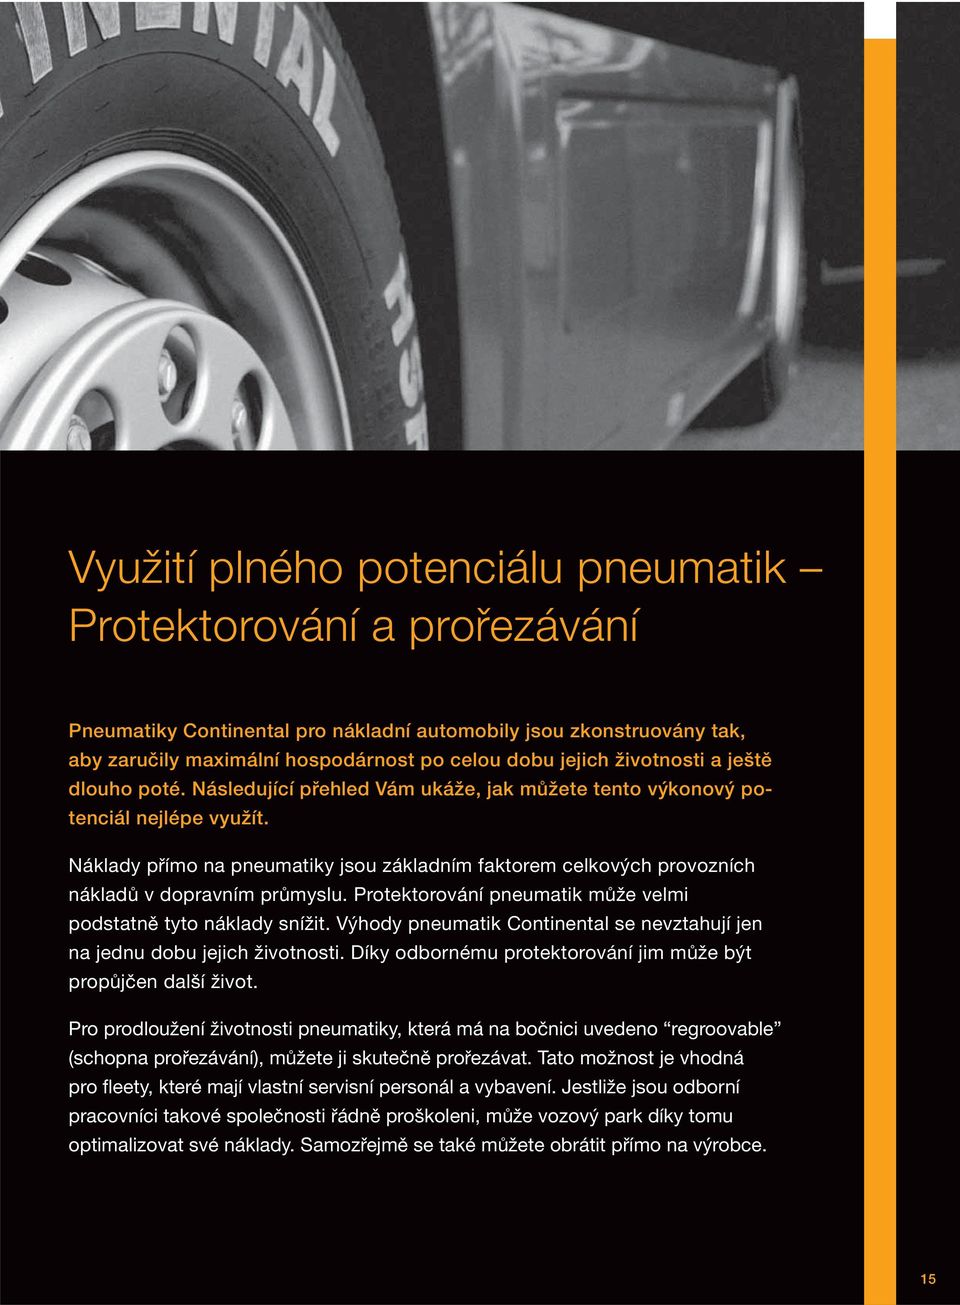 Náklady přímo na pneumatiky jsou základním faktorem celkových provozních nákladů v dopravním průmyslu. Protektorování pneumatik může velmi podstatně tyto náklady snížit.